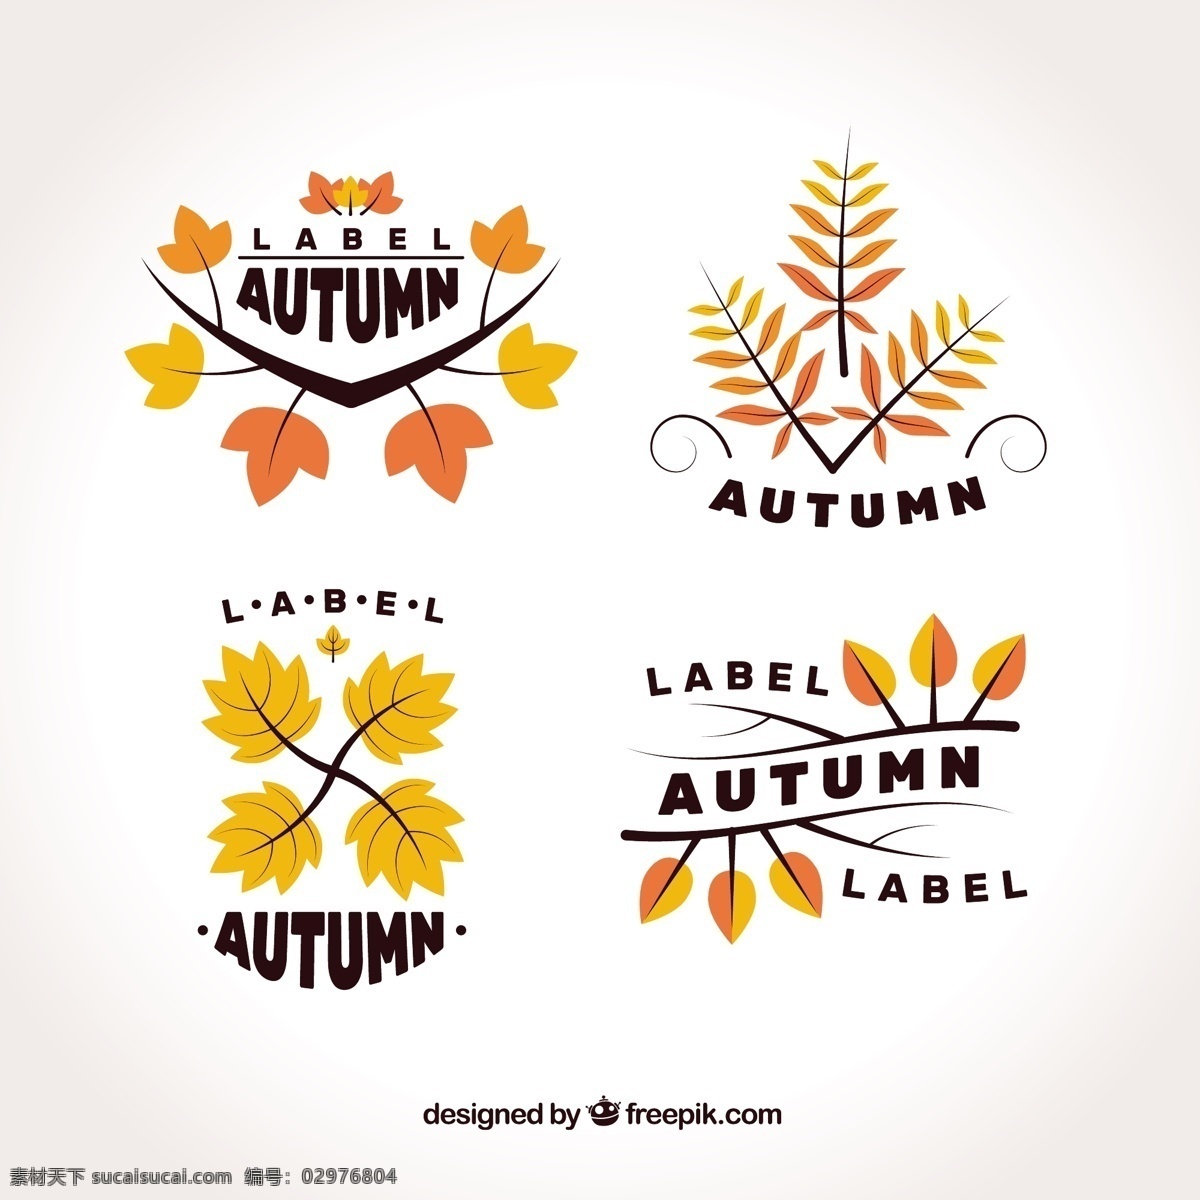 现代 扁平 秋装 系列 标签 叶 徽章 自然 邮票 可爱 秋天 树叶 彩色 平面 秋季 平面设计 会徽 符号 酷